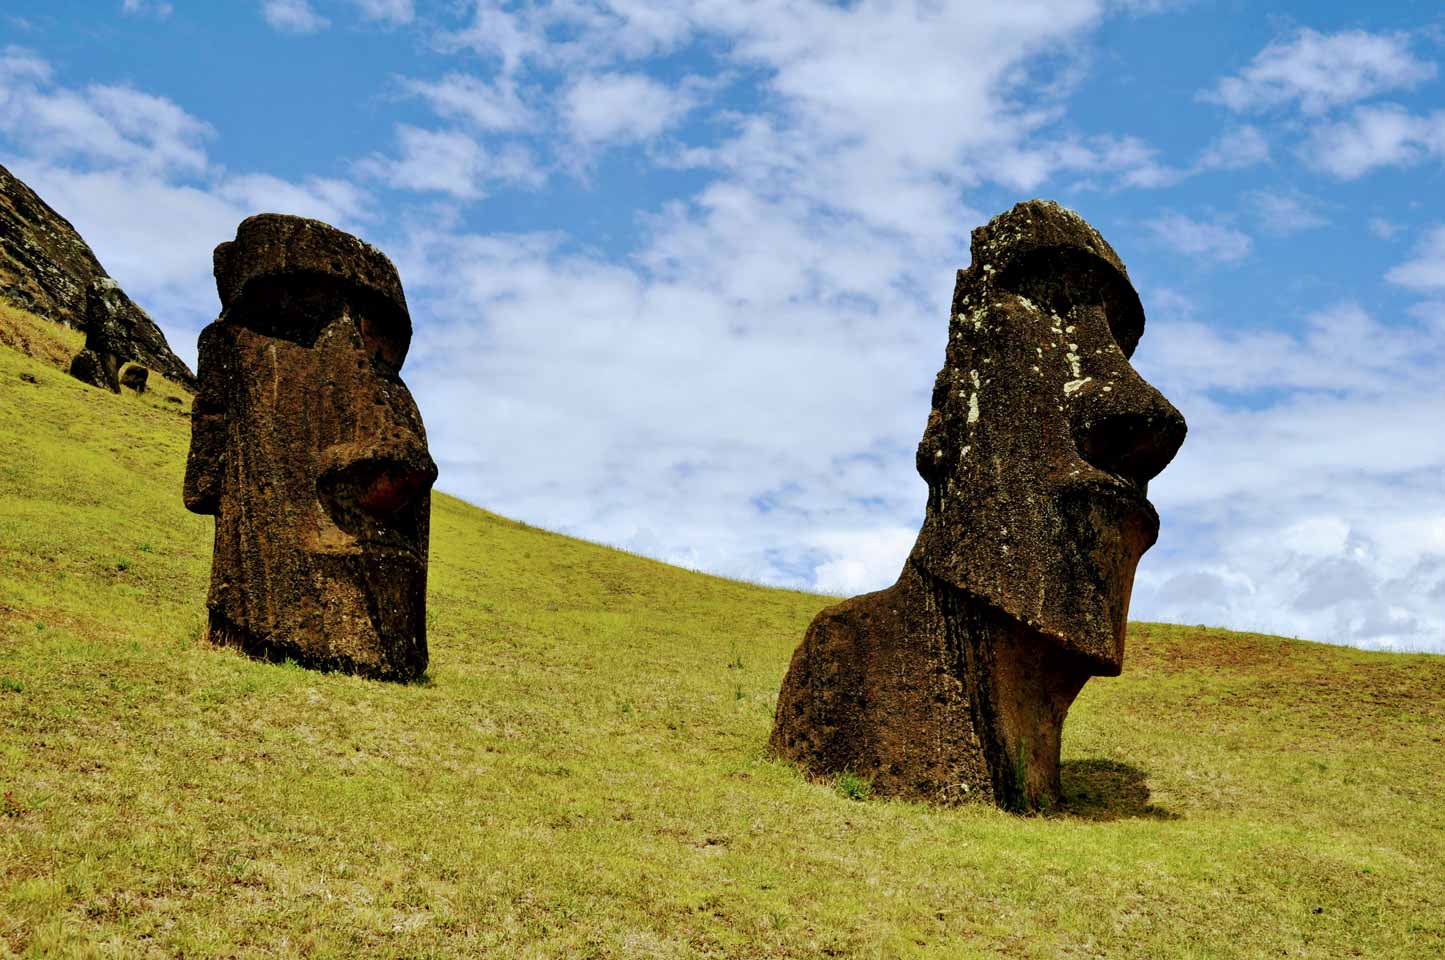 TDF-Rapa-Nui-Two-Moai-Heads-On-Hill-5-11-20